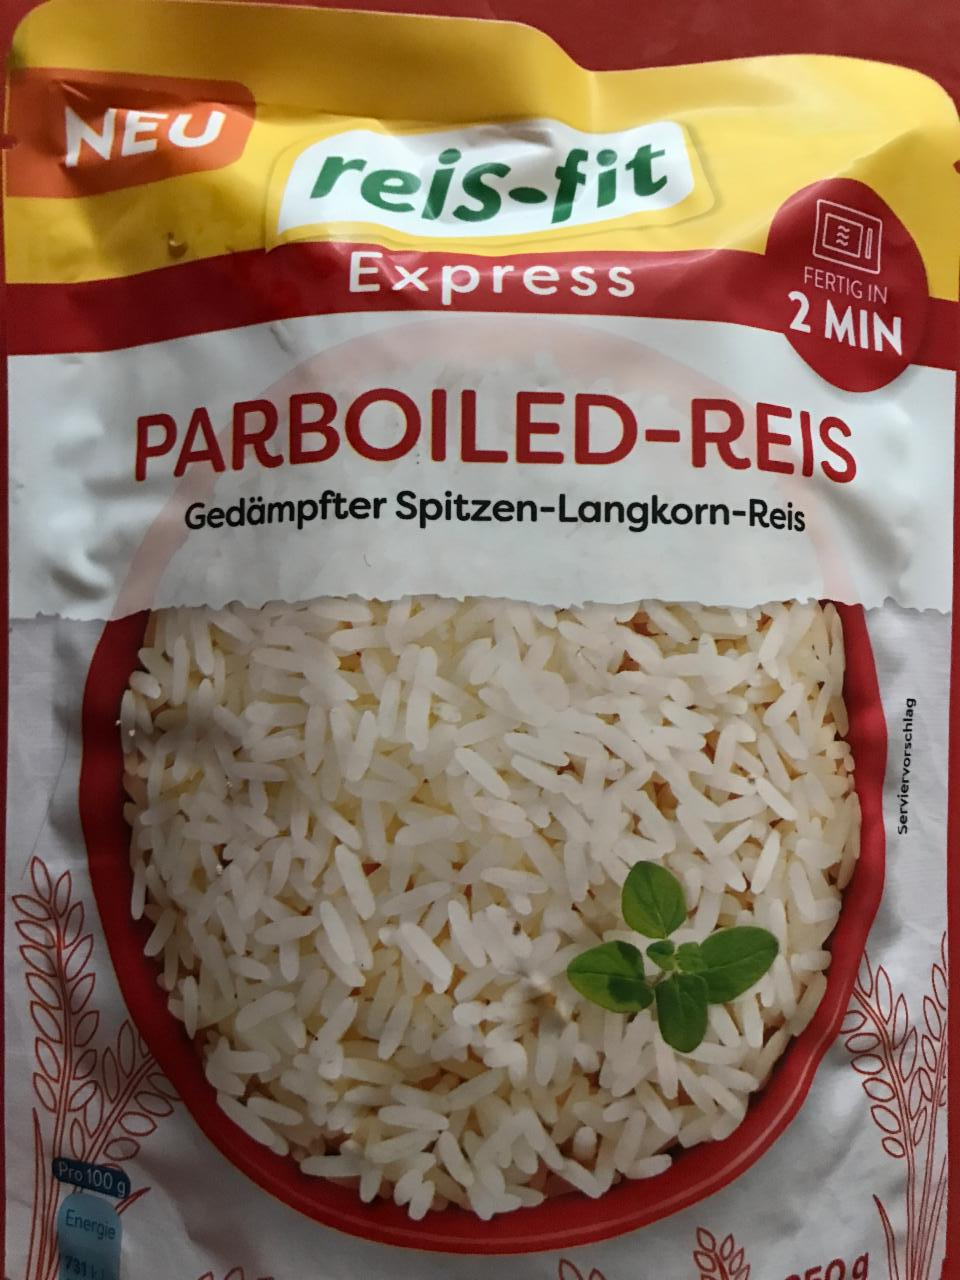 Fotografie - Parboiled-Reis Express Reis-fit